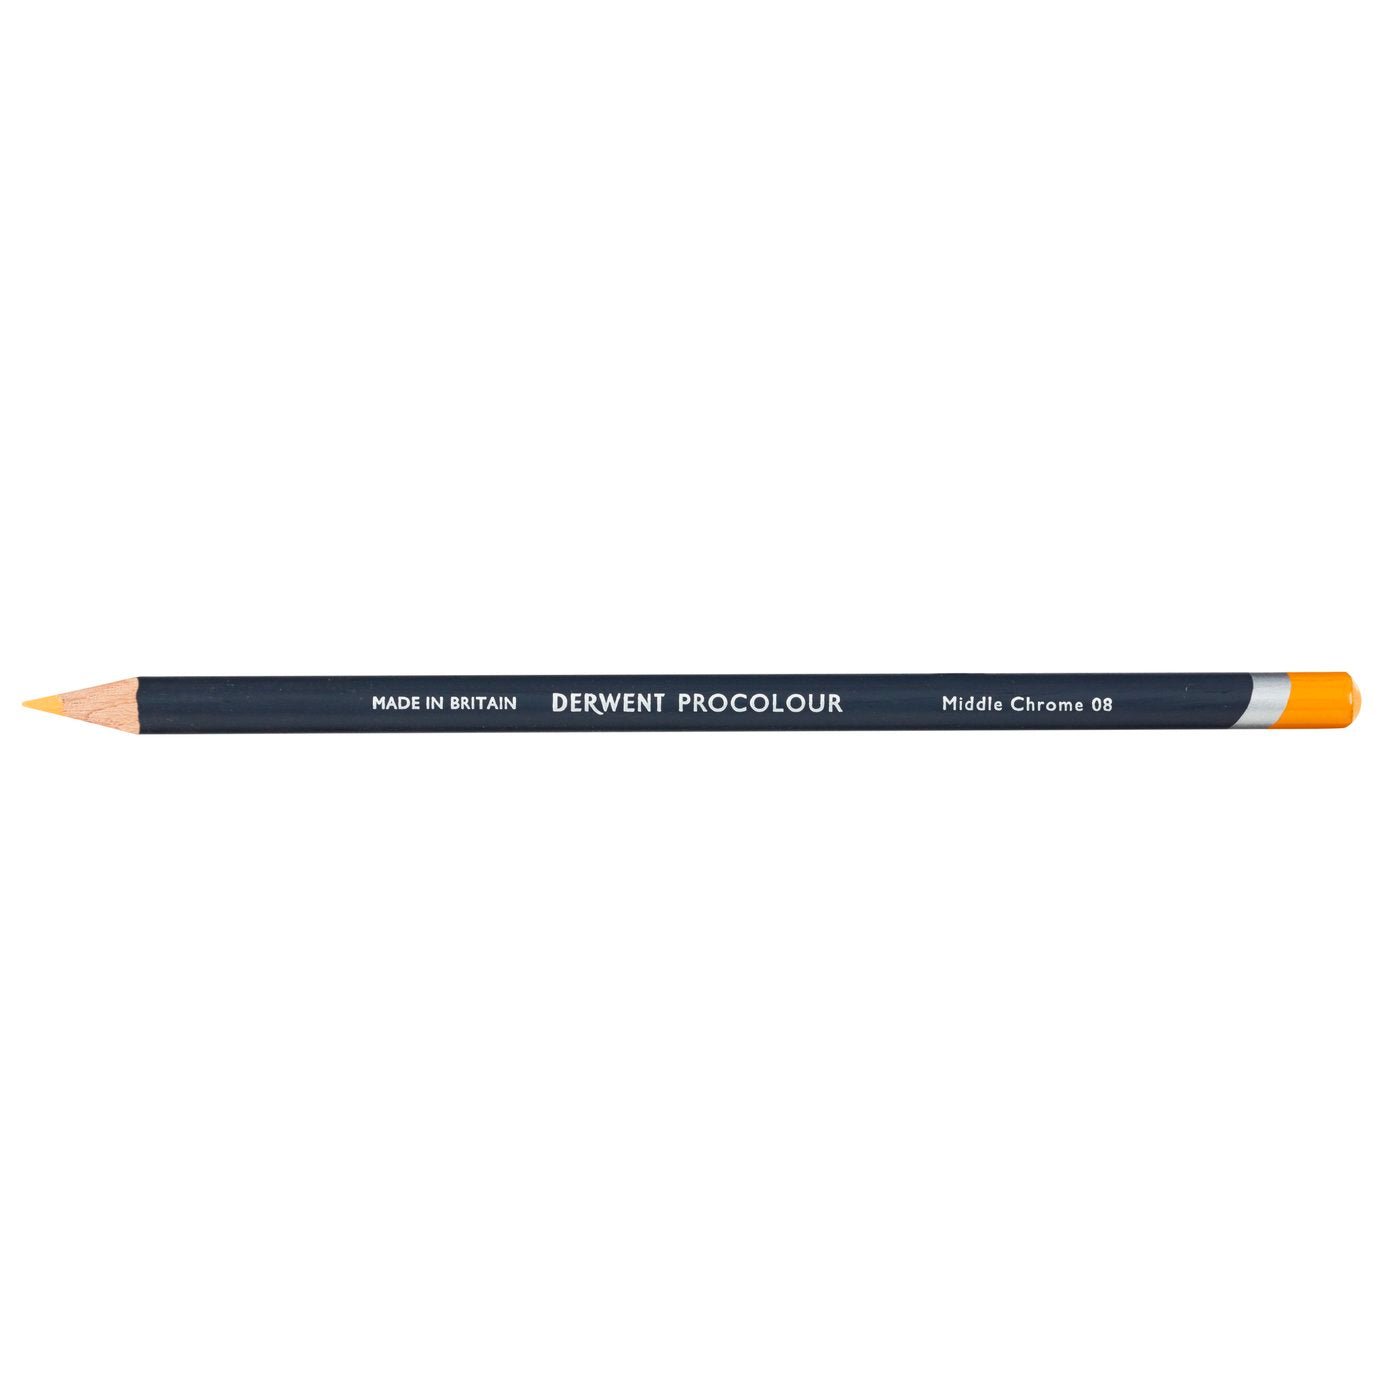 Derwent Procolour Pencil Middle Chrome 08 - theartshop.com.au